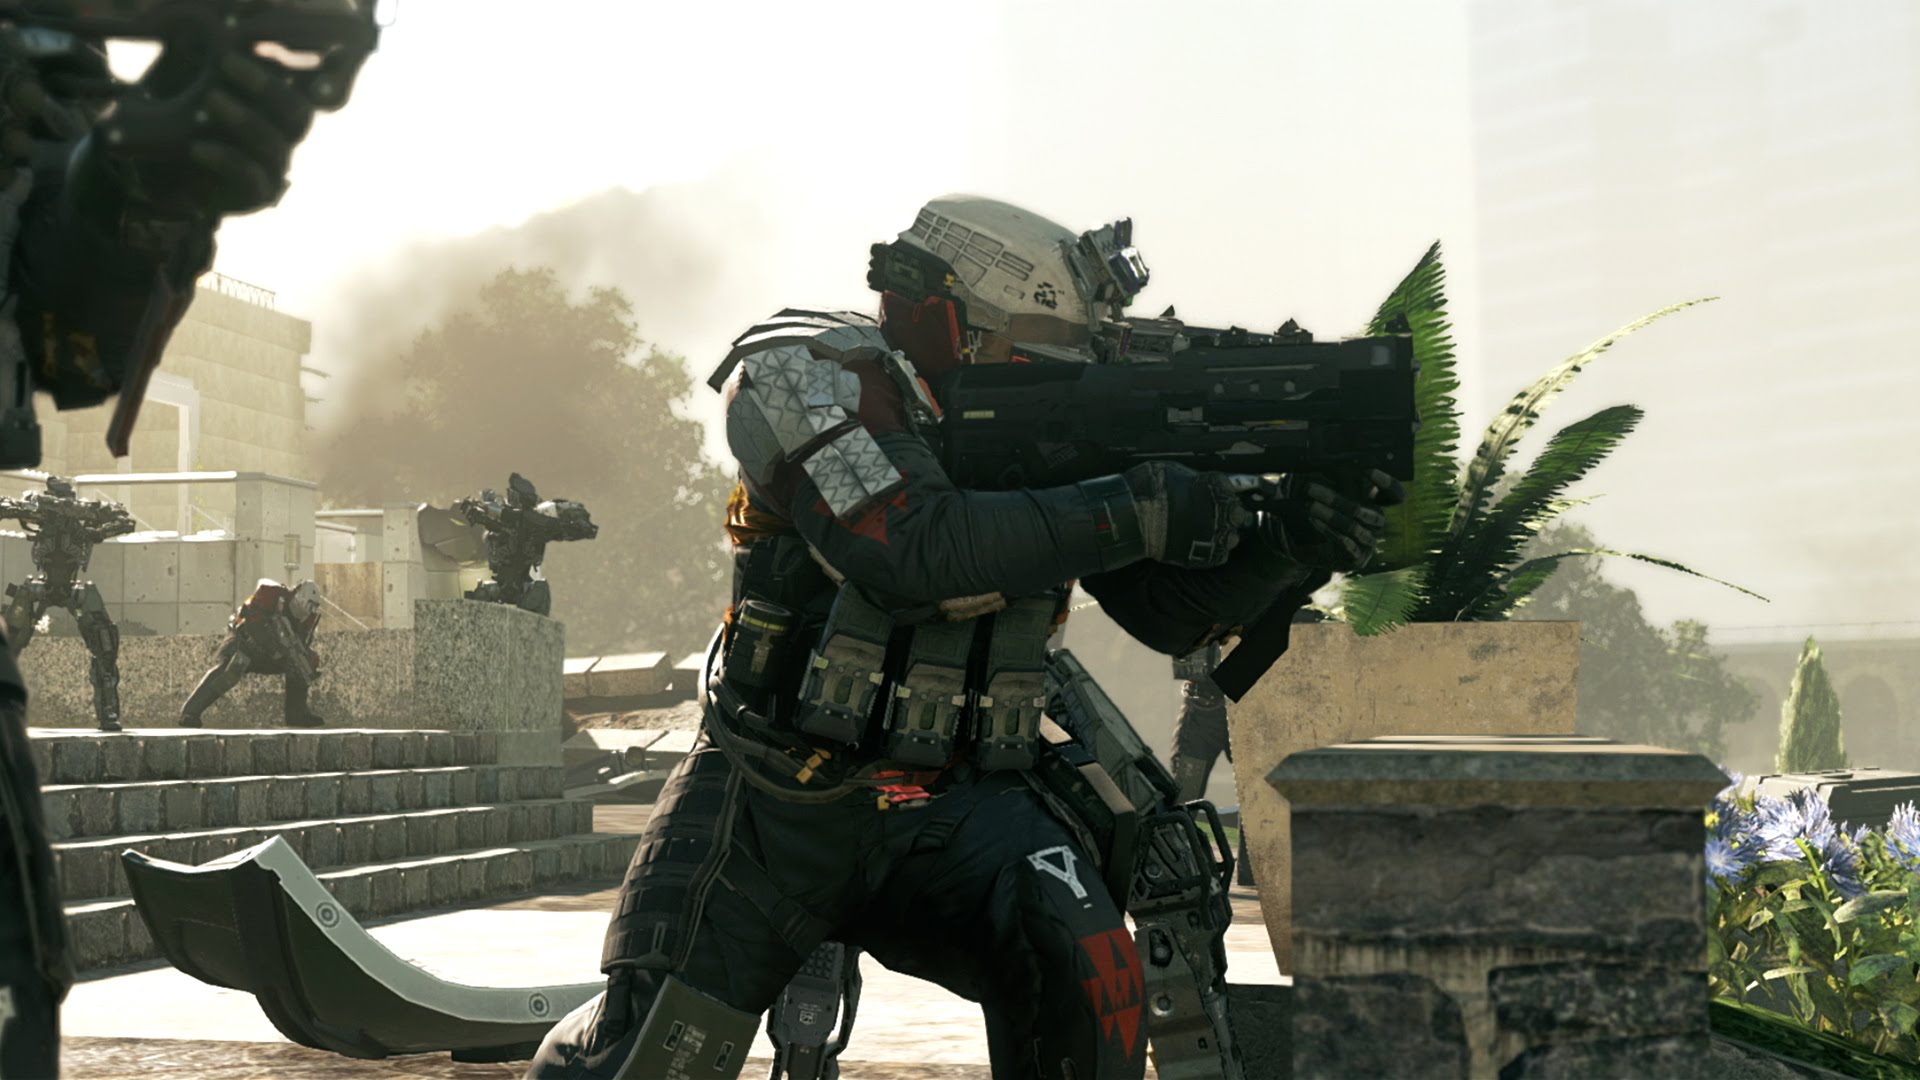 اولین تریلر رسمی Call of Duty Infinite Warfare منتشر شد 2